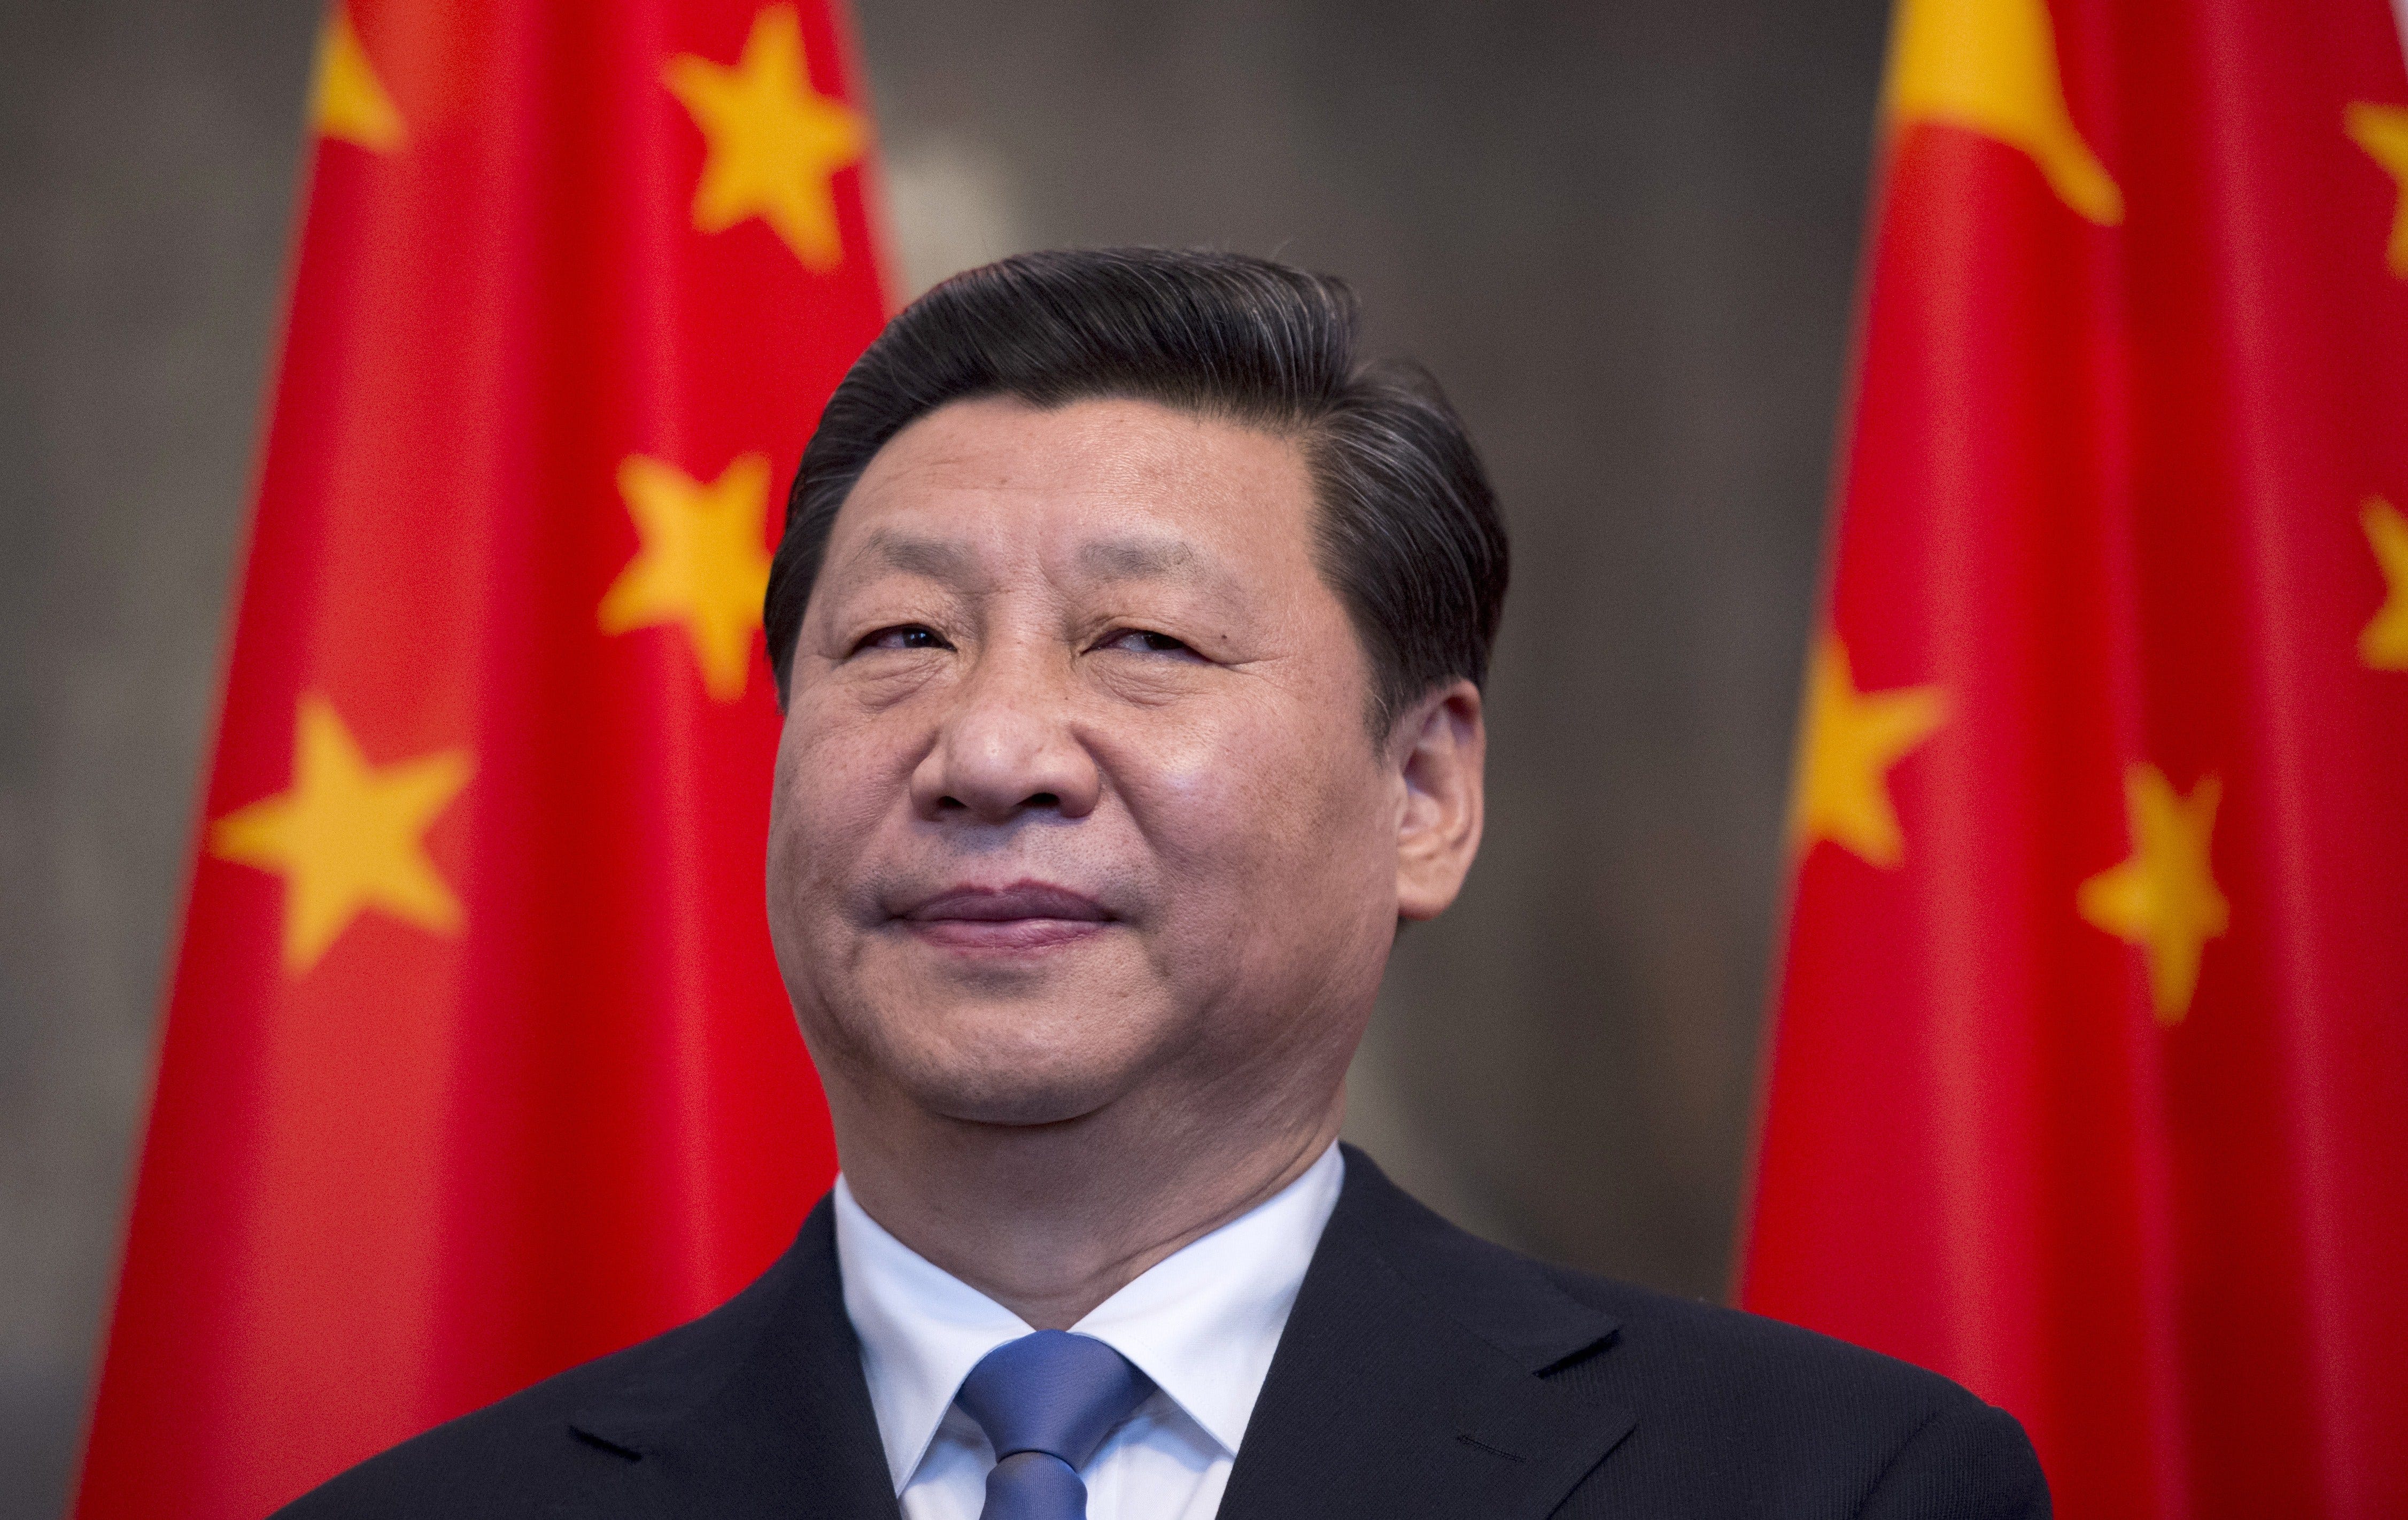 President Xi Jinping China